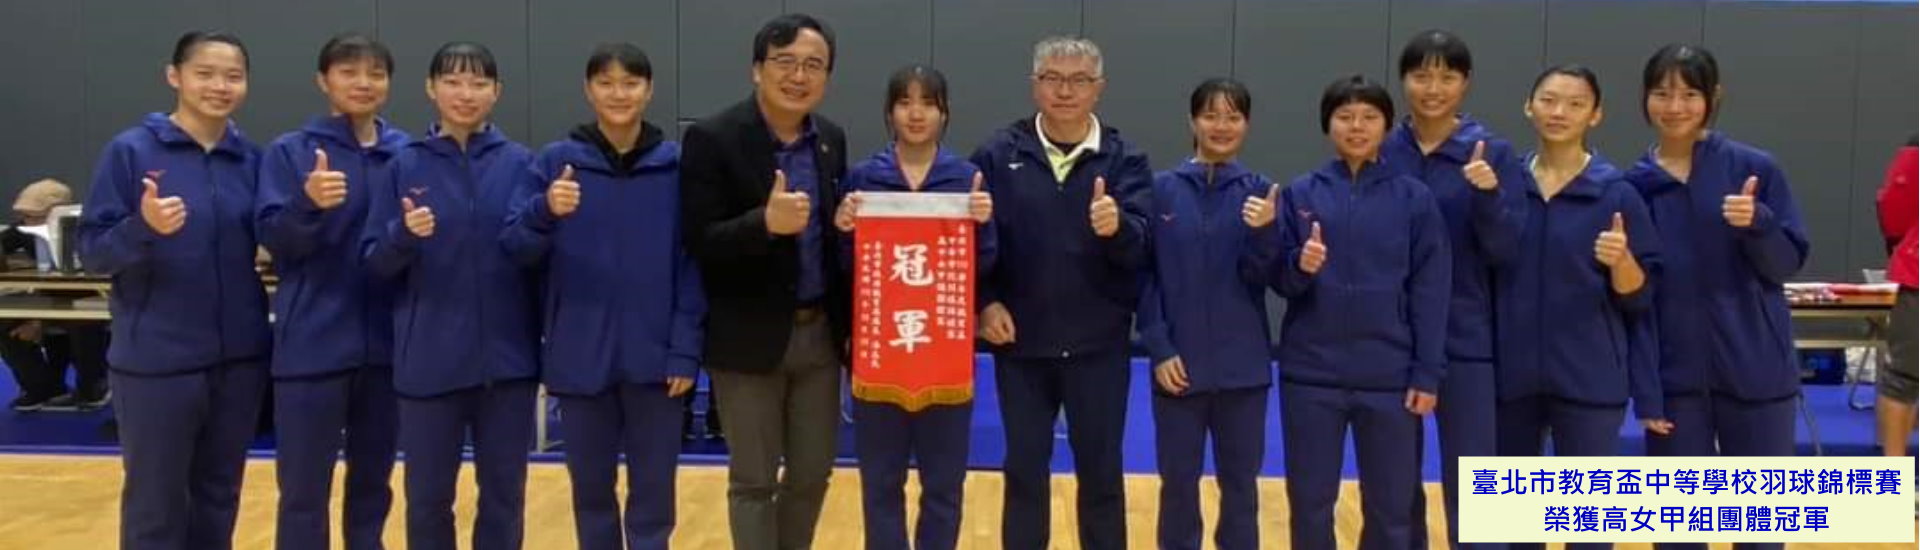 臺北市教育盃中等學校羽球錦標賽榮獲高女甲組團體冠軍